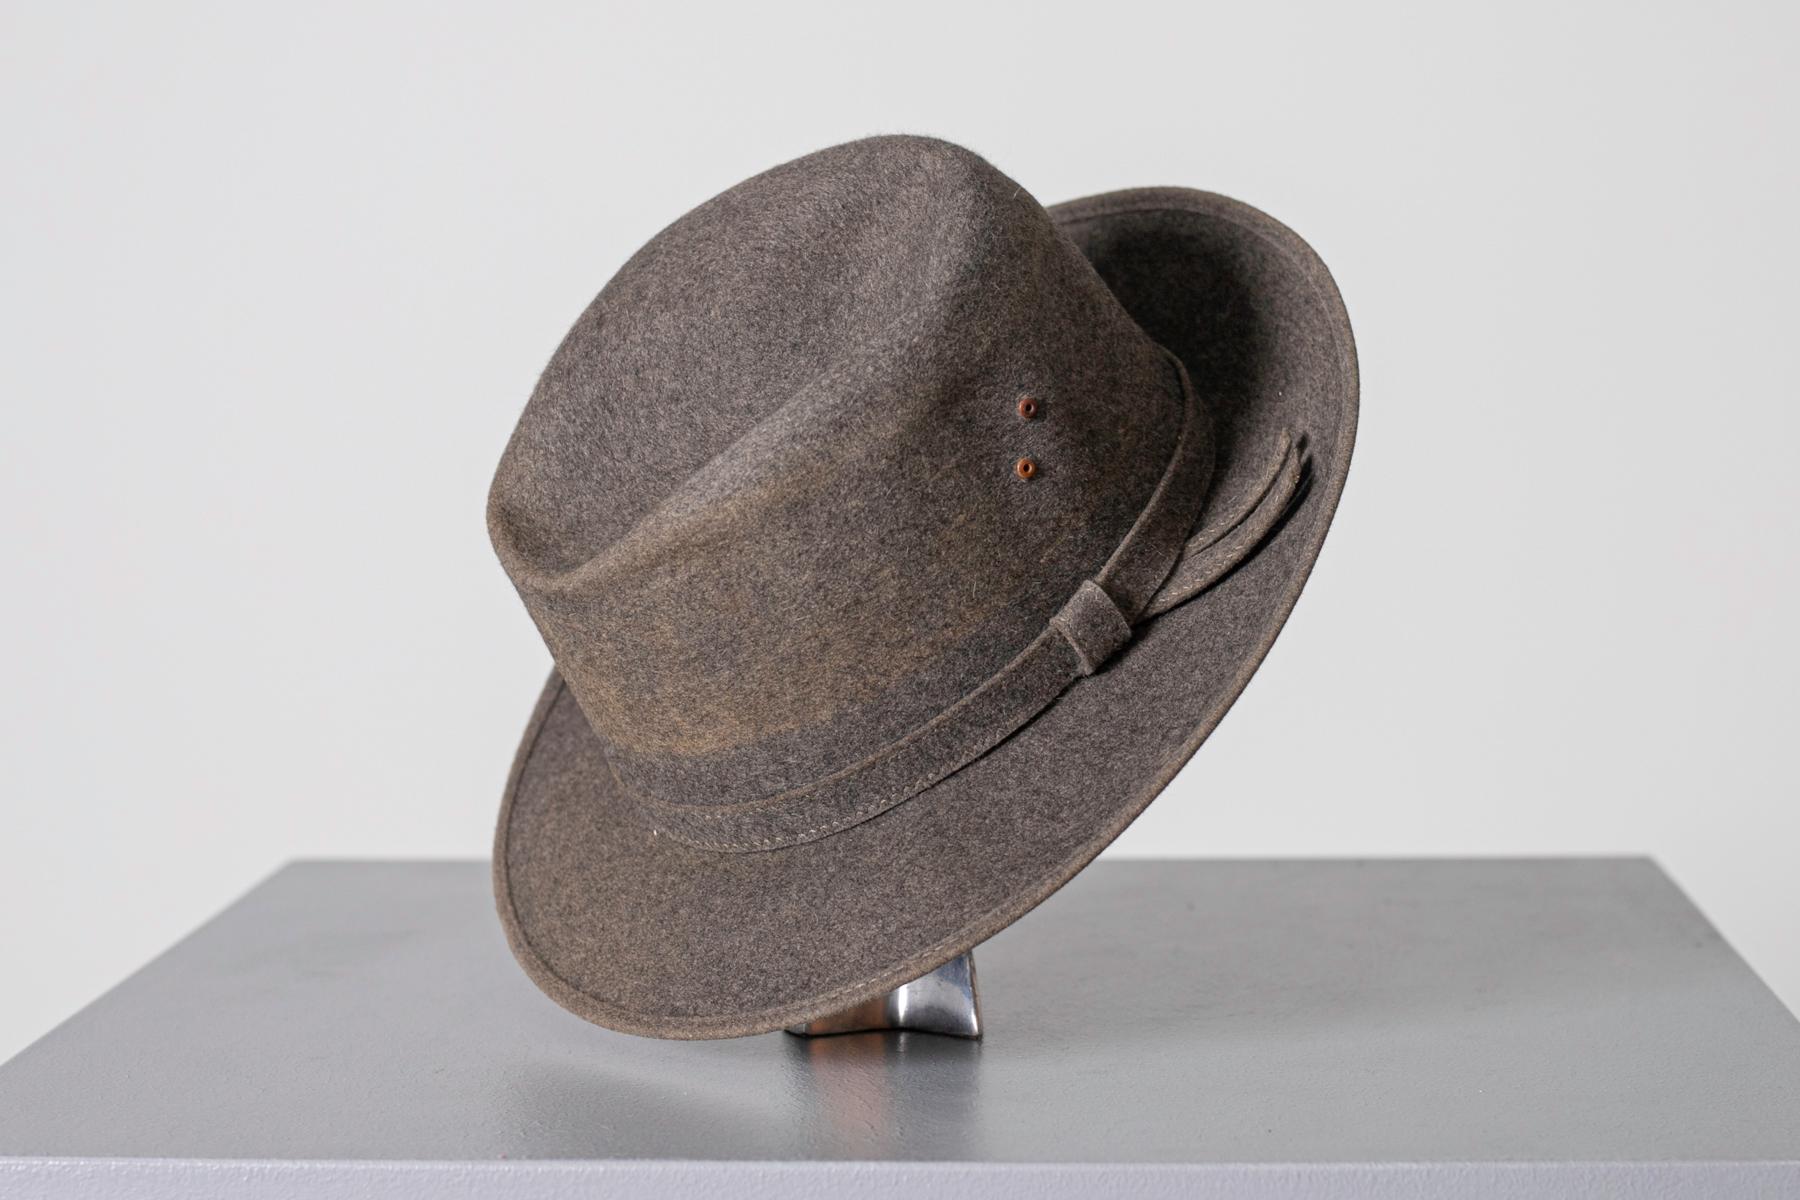 Joli chapeau en feutre gris du millésime 1990, belle fabrication italienne.
Le chapeau est entièrement réalisé en feutre
Le dôme porte 4 pinces douces.
À la base extérieure du dôme se trouve une bande grise avec un arc minimal sur la gauche.
À